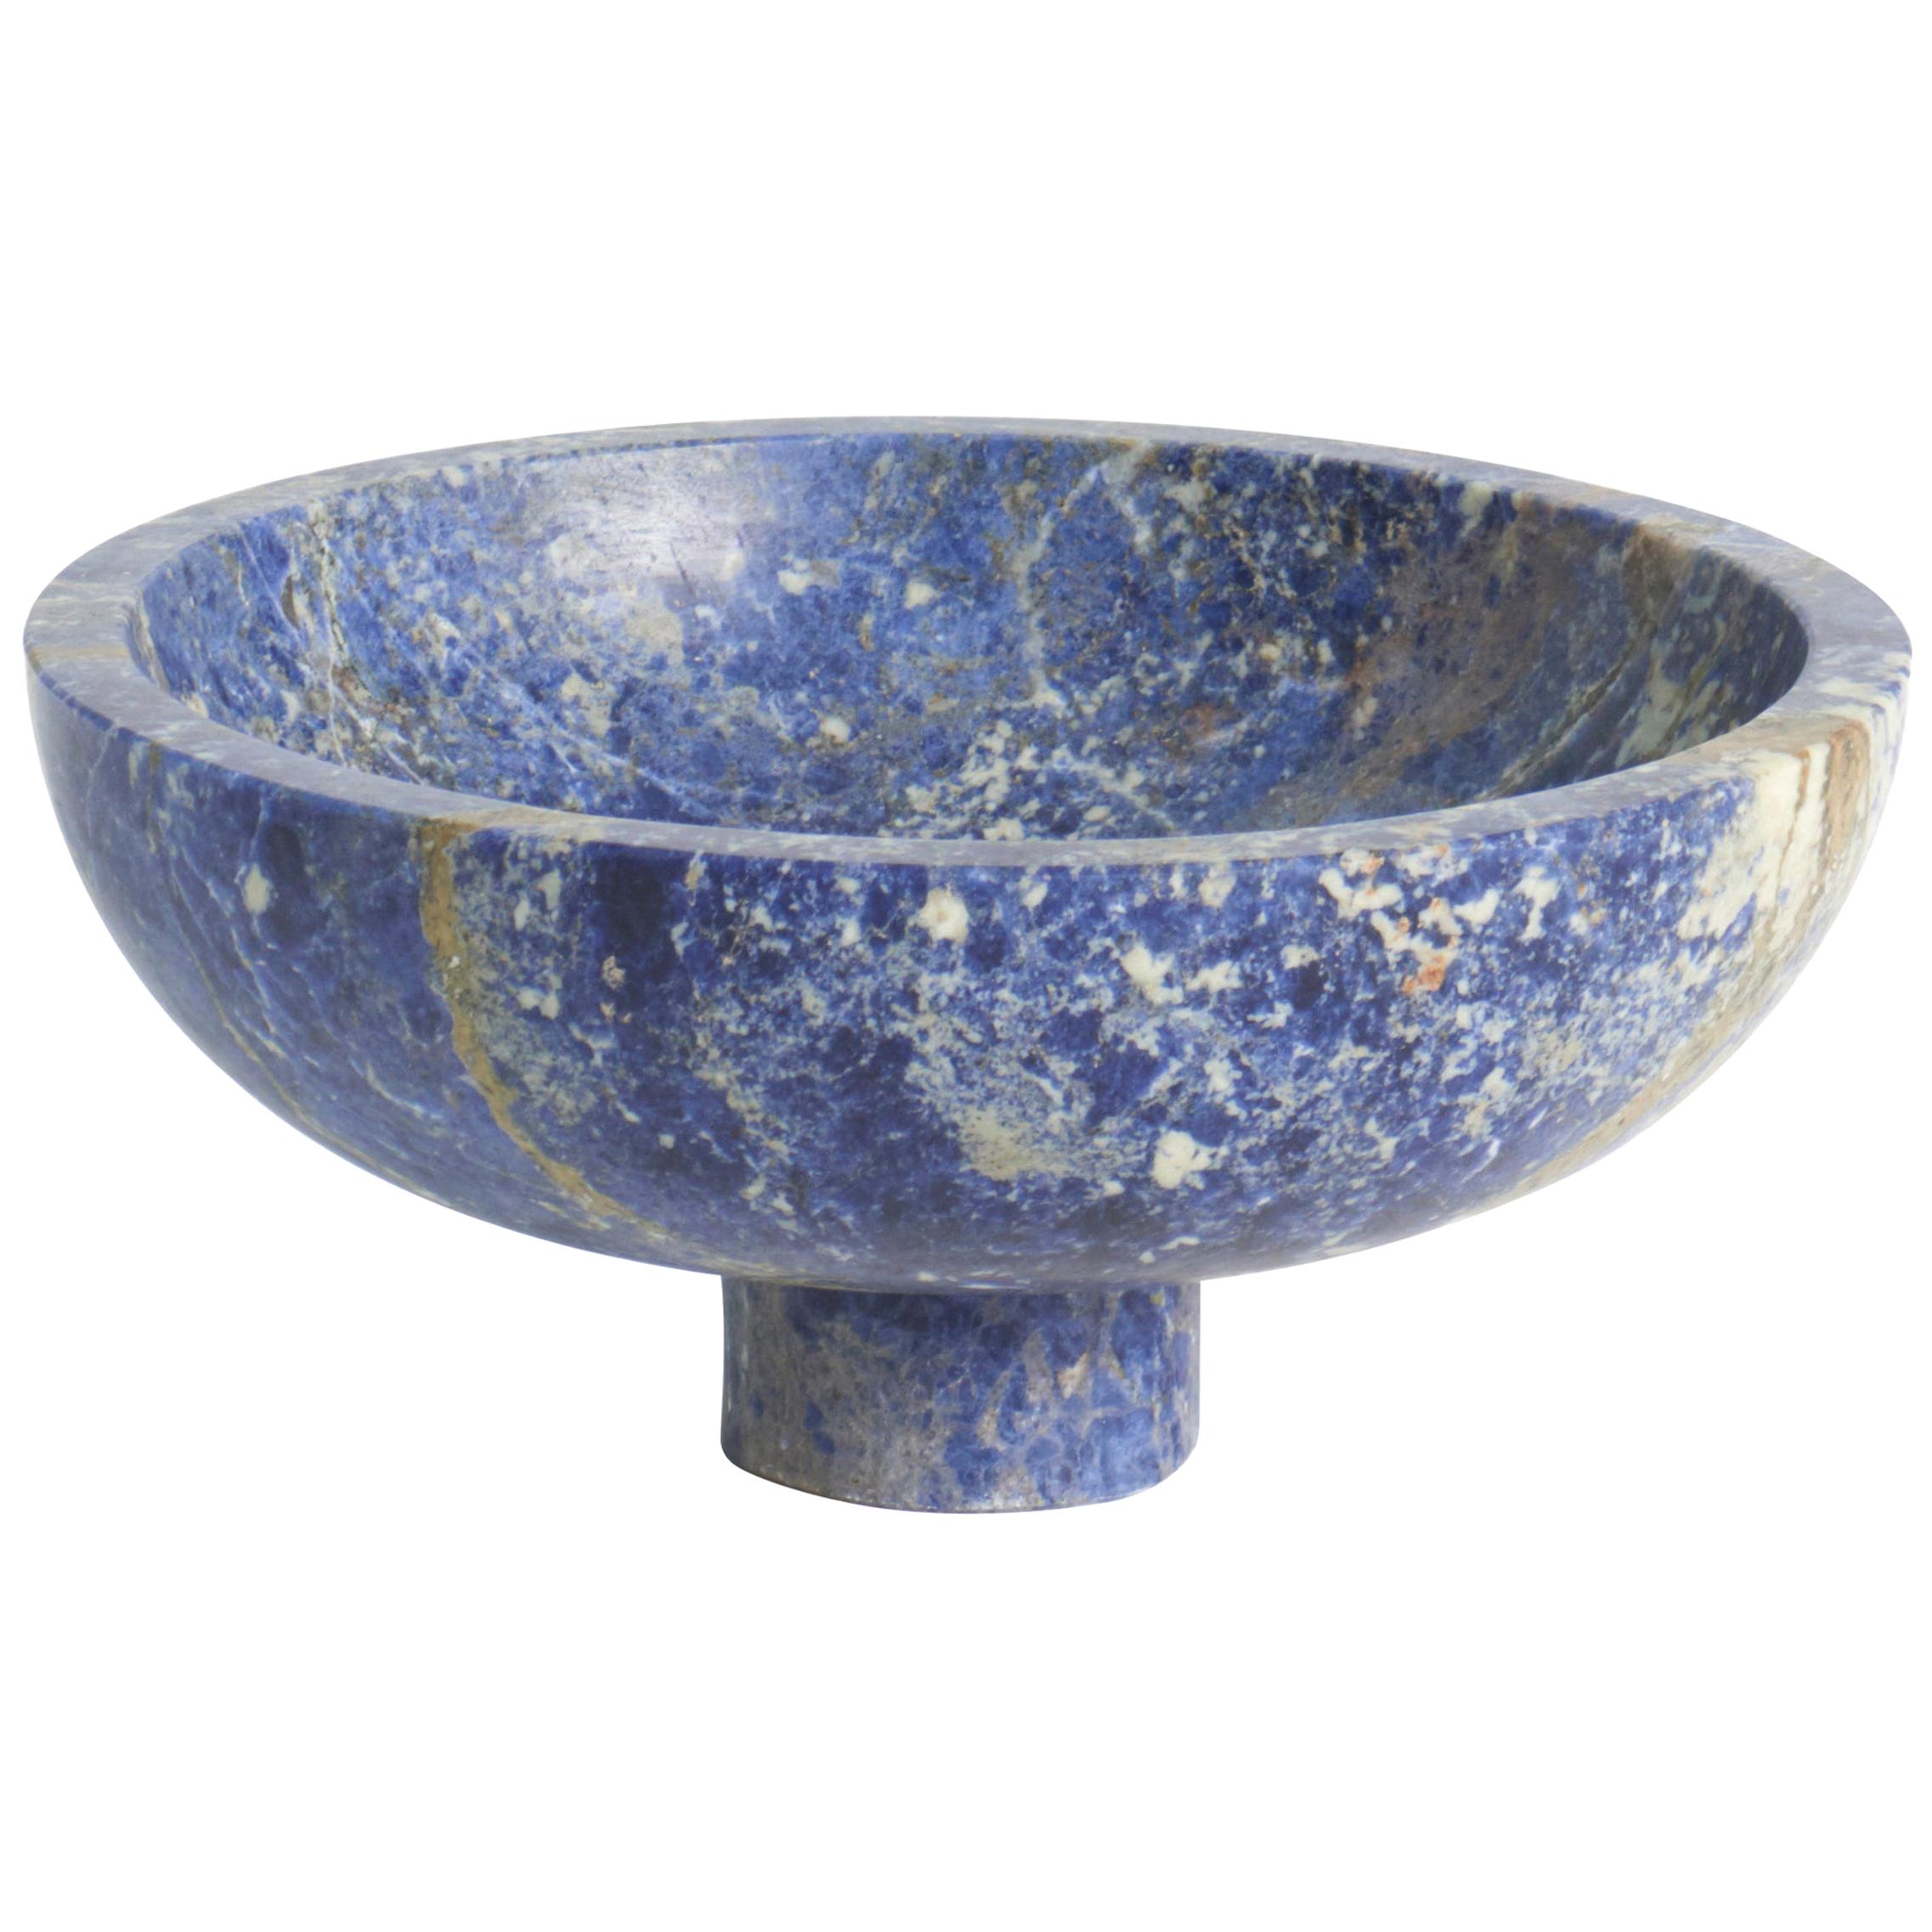 New modern Fruit Bowl in Blue Marble, creator Karen Chekerdjian Stock